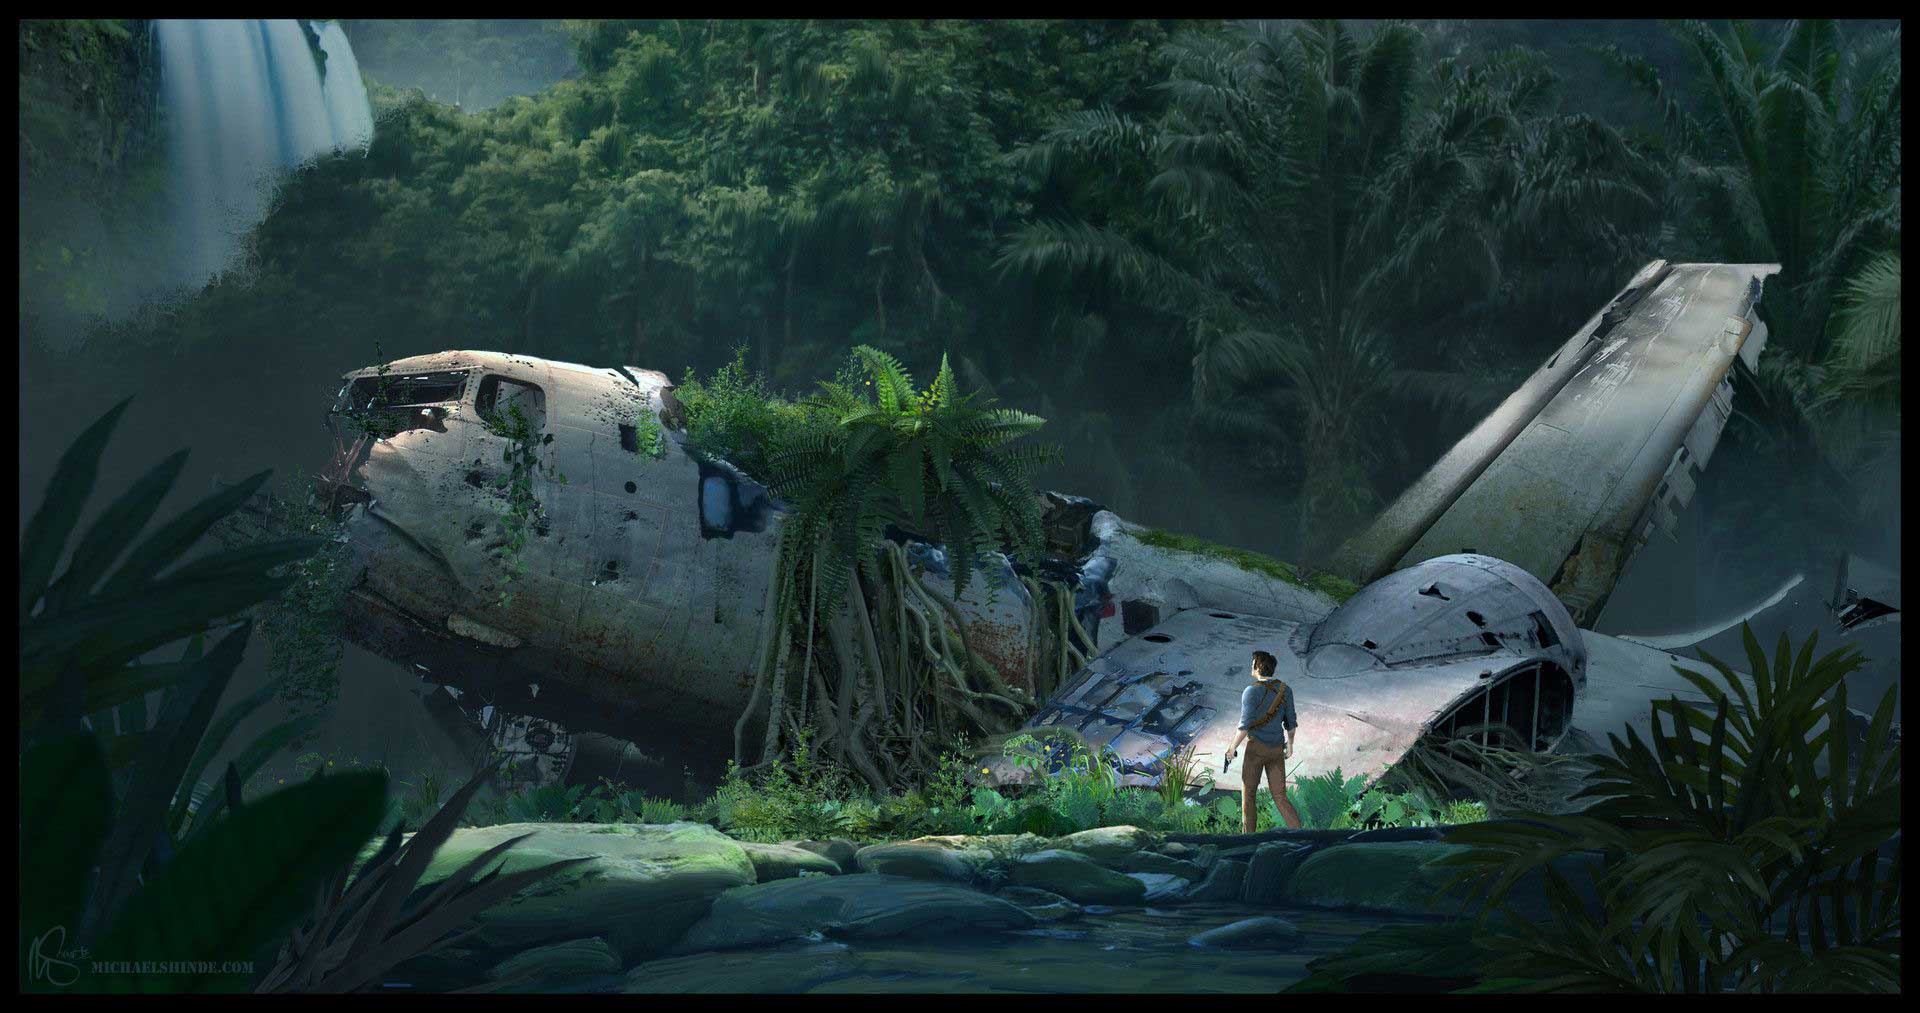 طرح هنری بازی آنچارتد با حضور نیتن دریک در مقابل هواپیما سقوط کرده و طبیعت دست نخورده اطراف